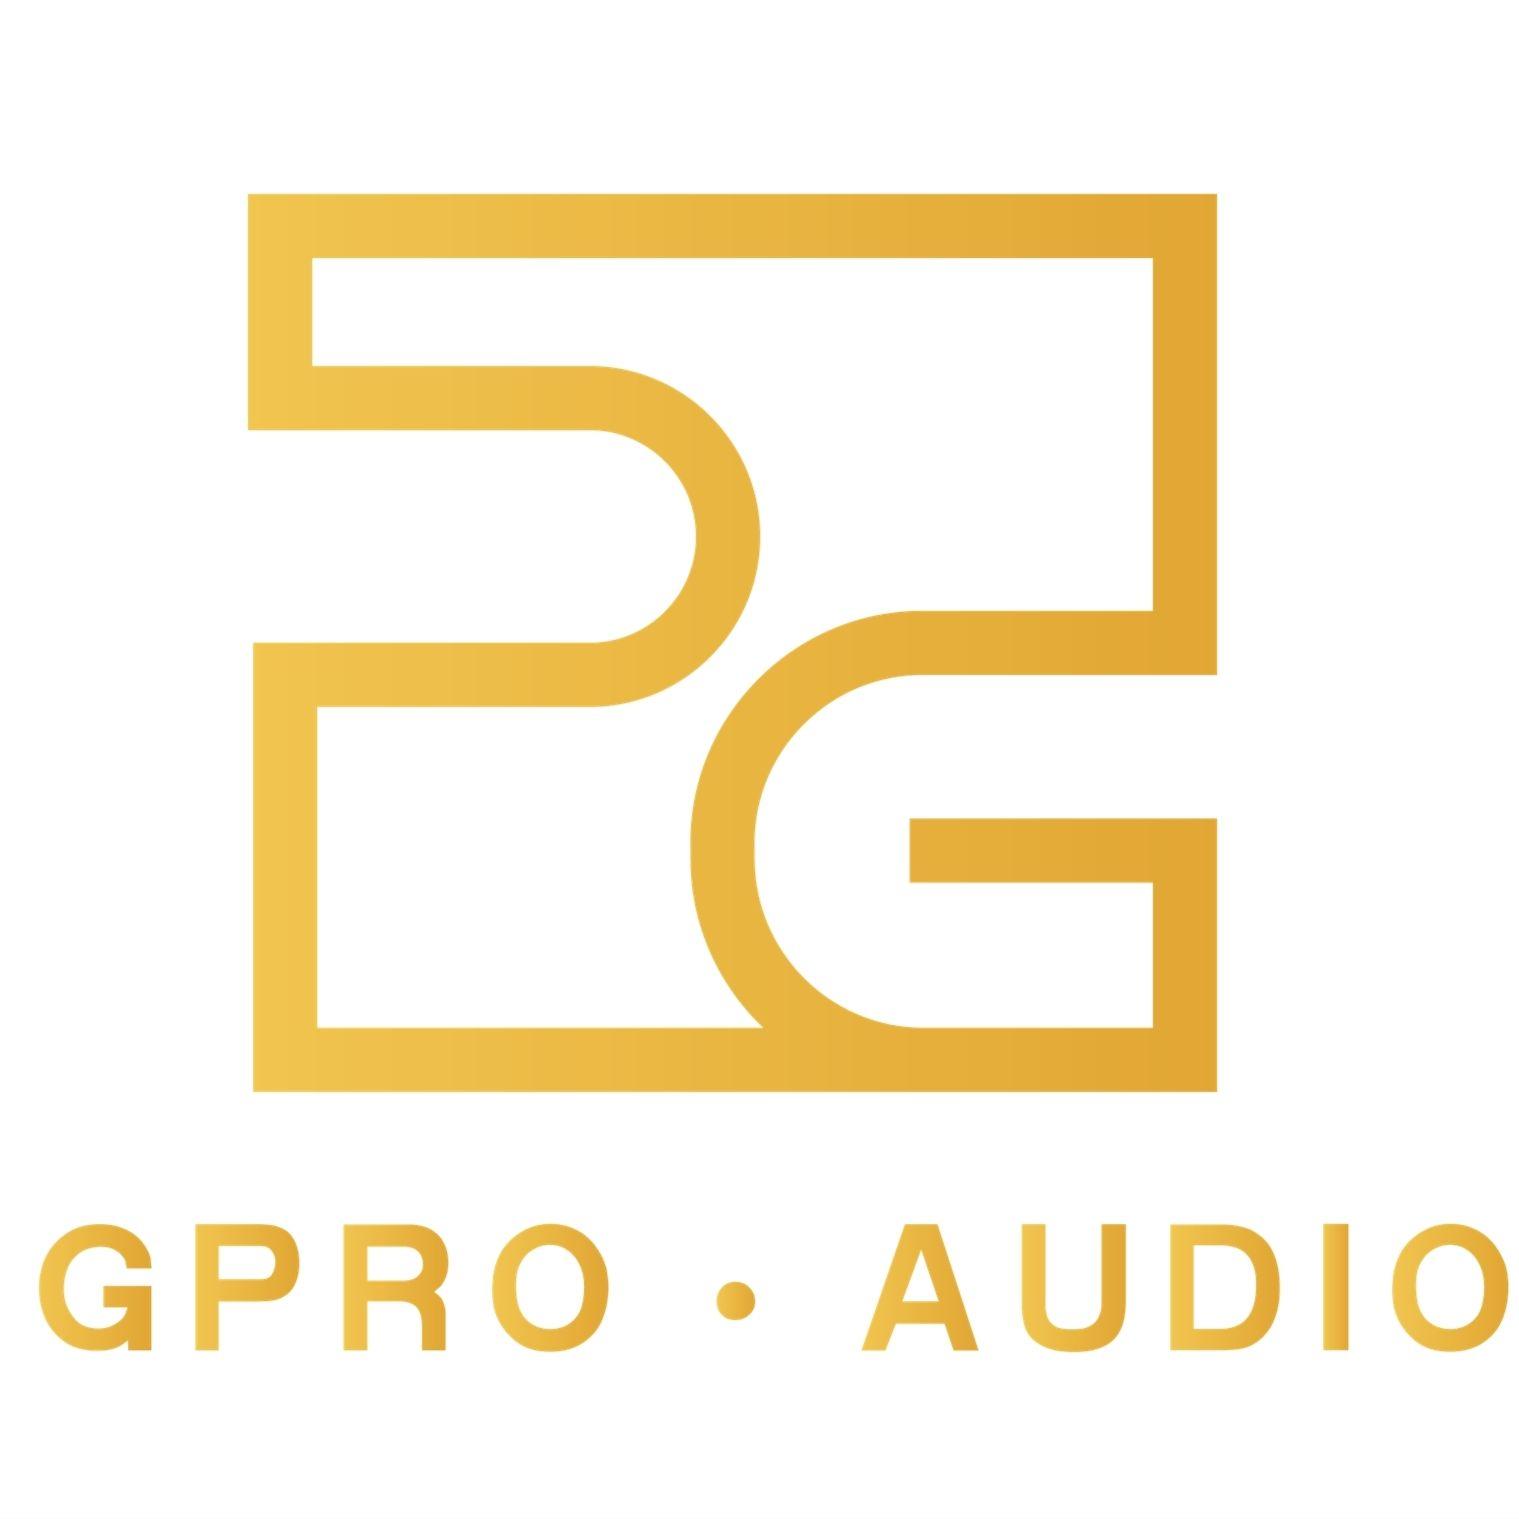 GUANGZHOU GPRO AUDIO EQUIPMENT CO., LTD